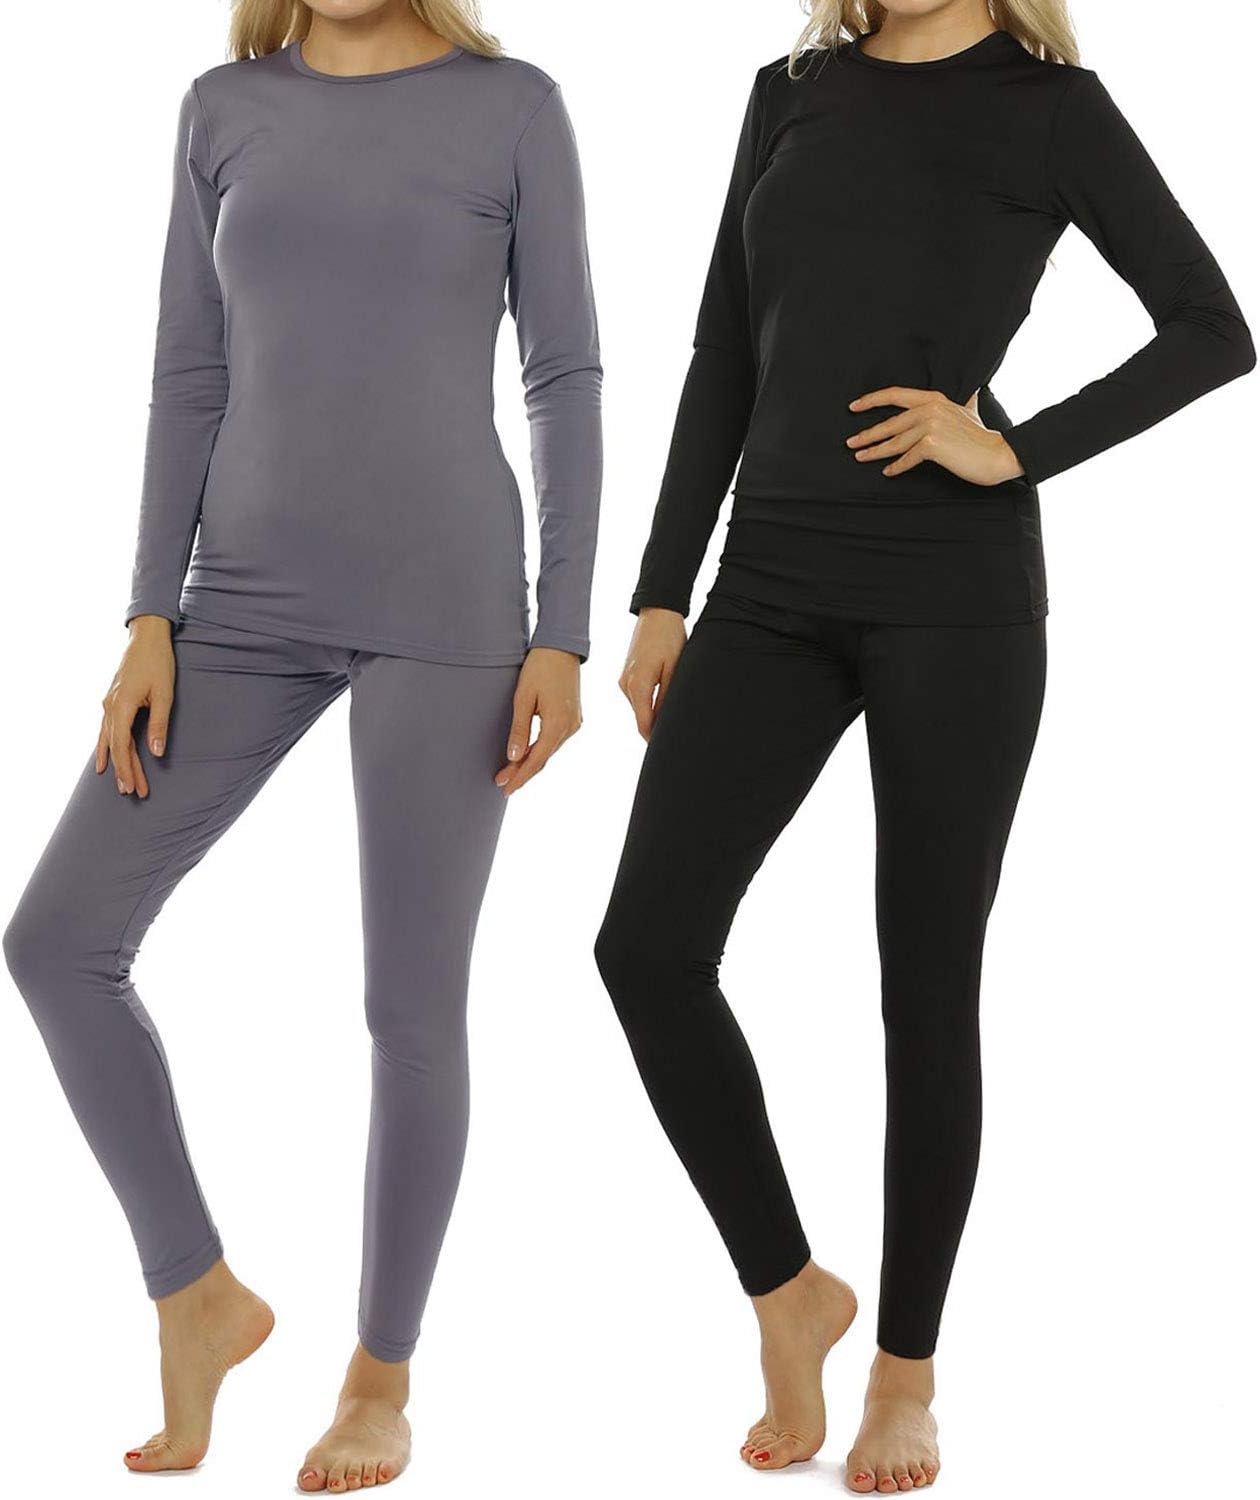 ViCherub Thermal Underwear Set for Women Long Johns Base Layer